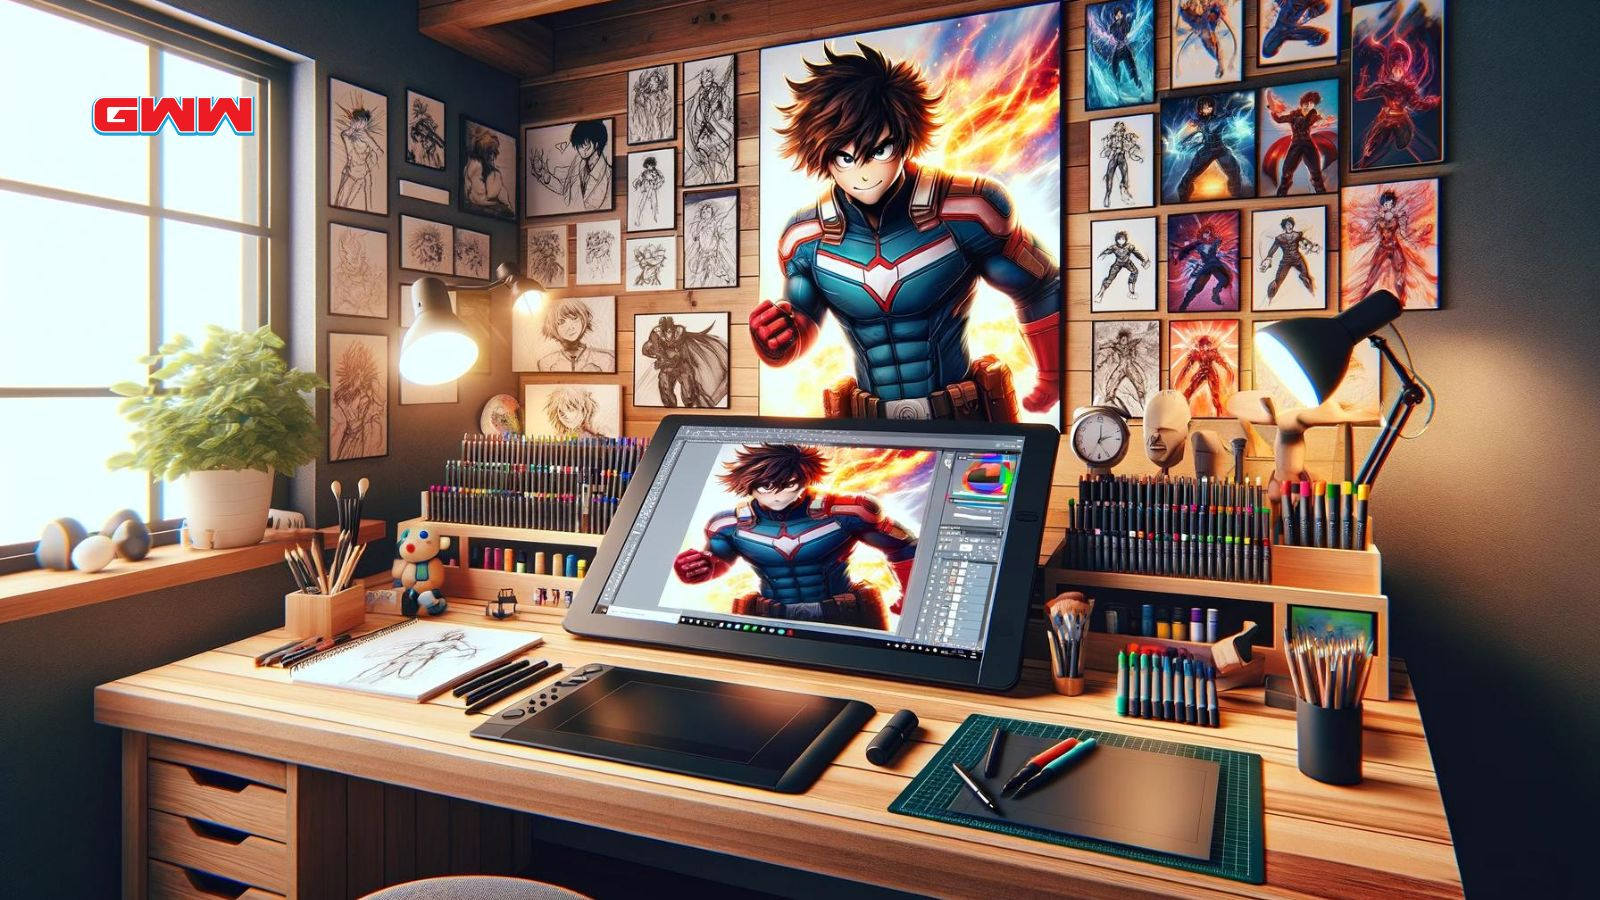 Anime superhero illustration on artist's digital workspace